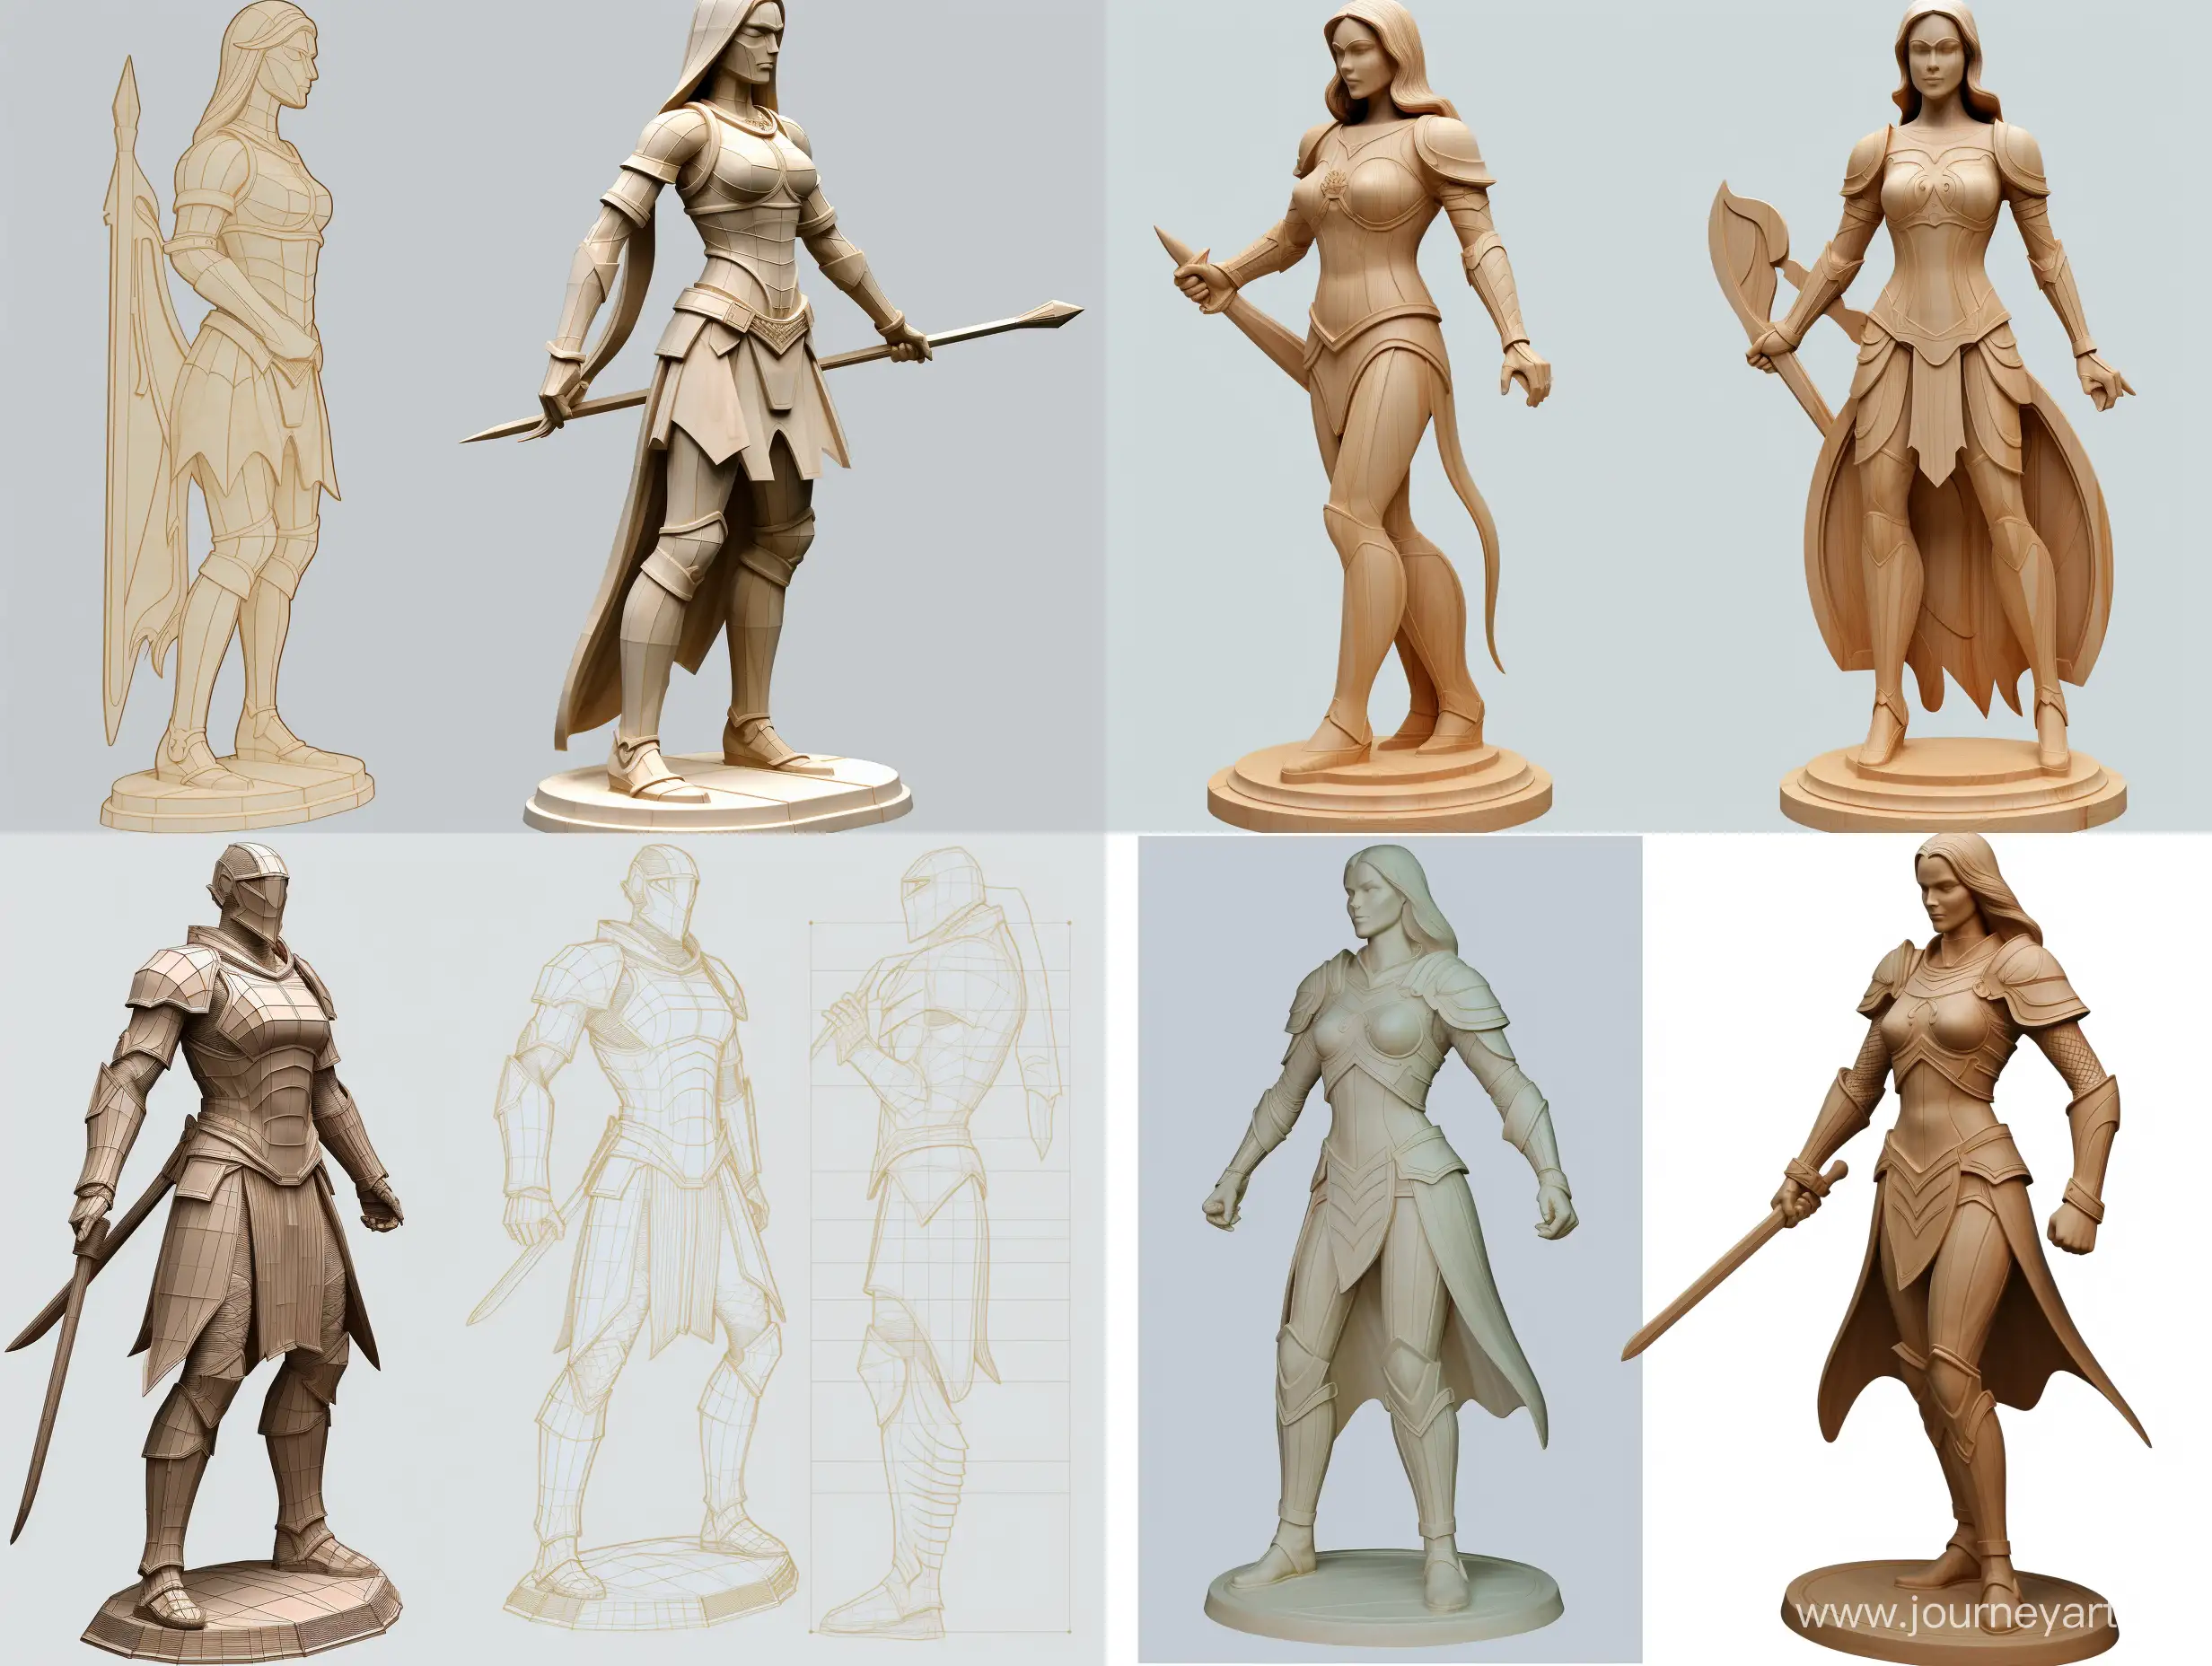 UltraDetailed-Translucent-Woman-Wooden-Sculpture-3D-Concept-Art-for-Battle